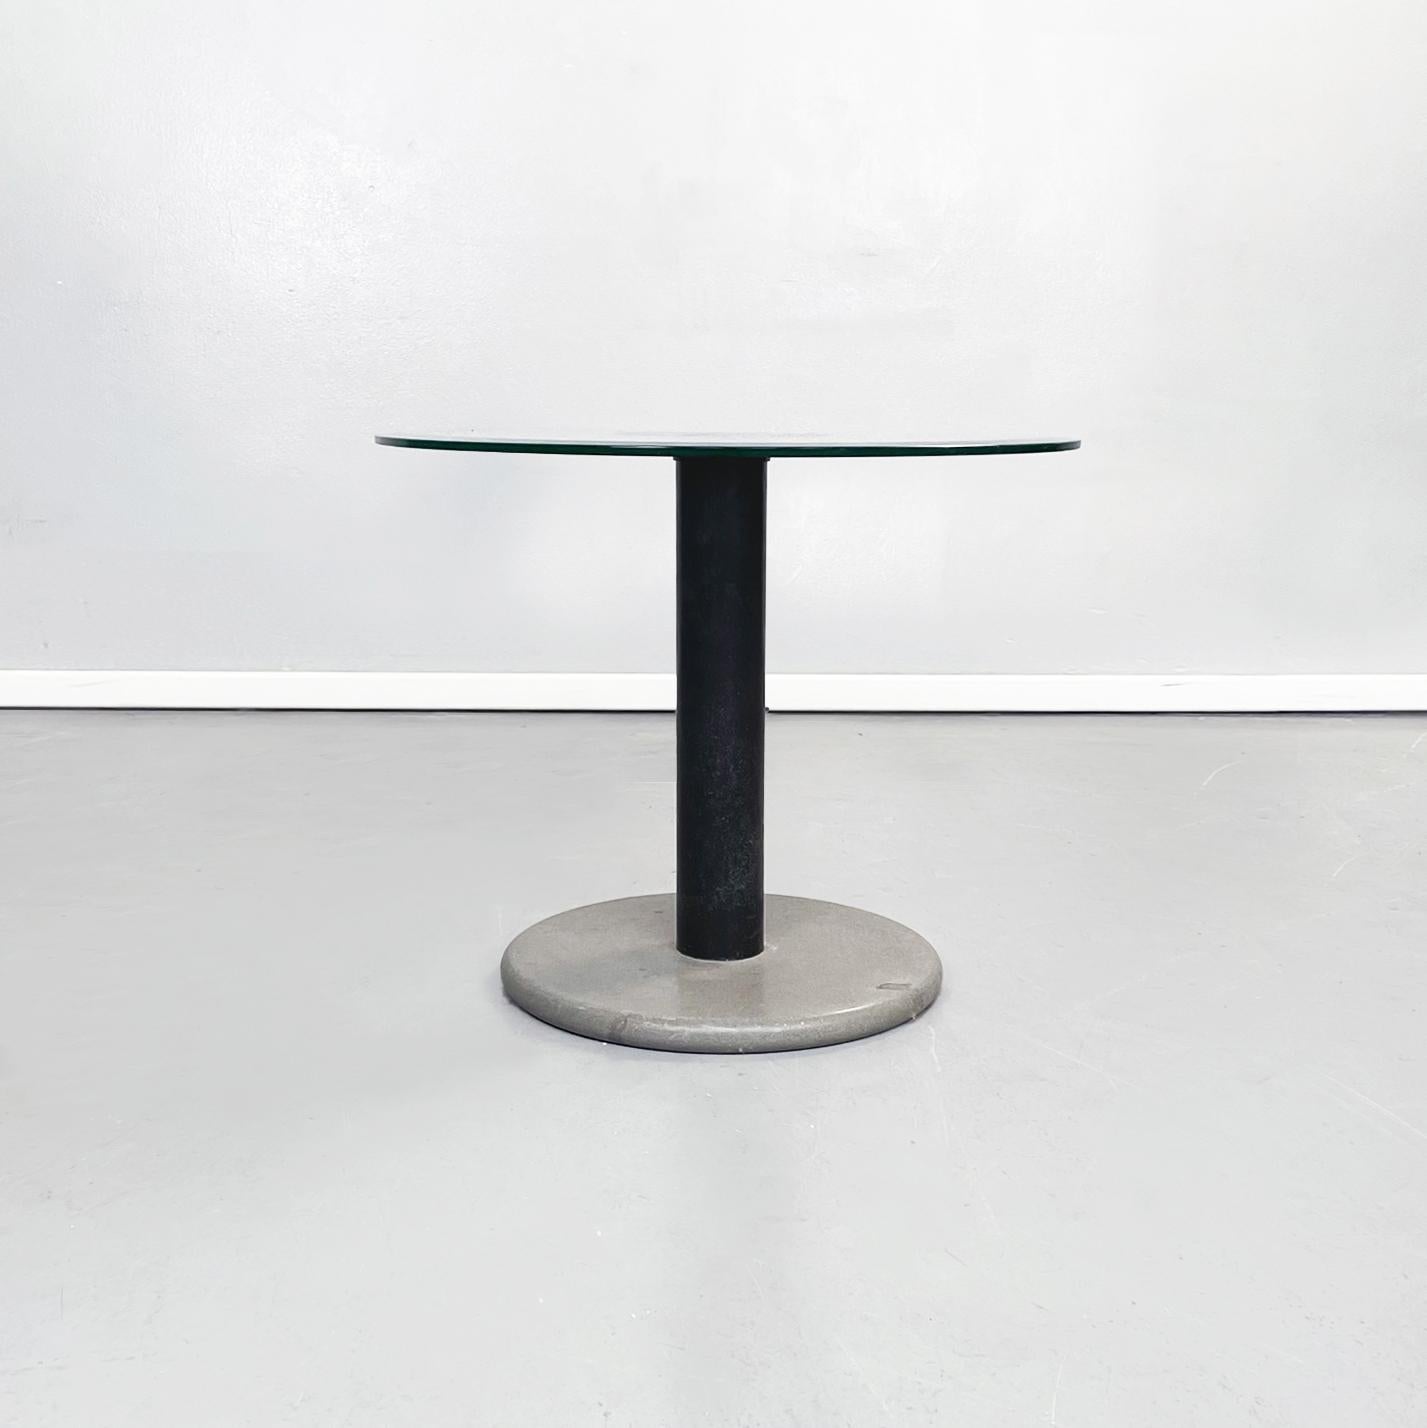 Table basse moderne italienne en verre vert, métal noir et pierre grise, années 1980
Table basse avec plateau rond en verre assez transparent et vert, elle varie selon la lumière qu'elle reçoit.
Les deux cercles noirs concentriques au centre donnent